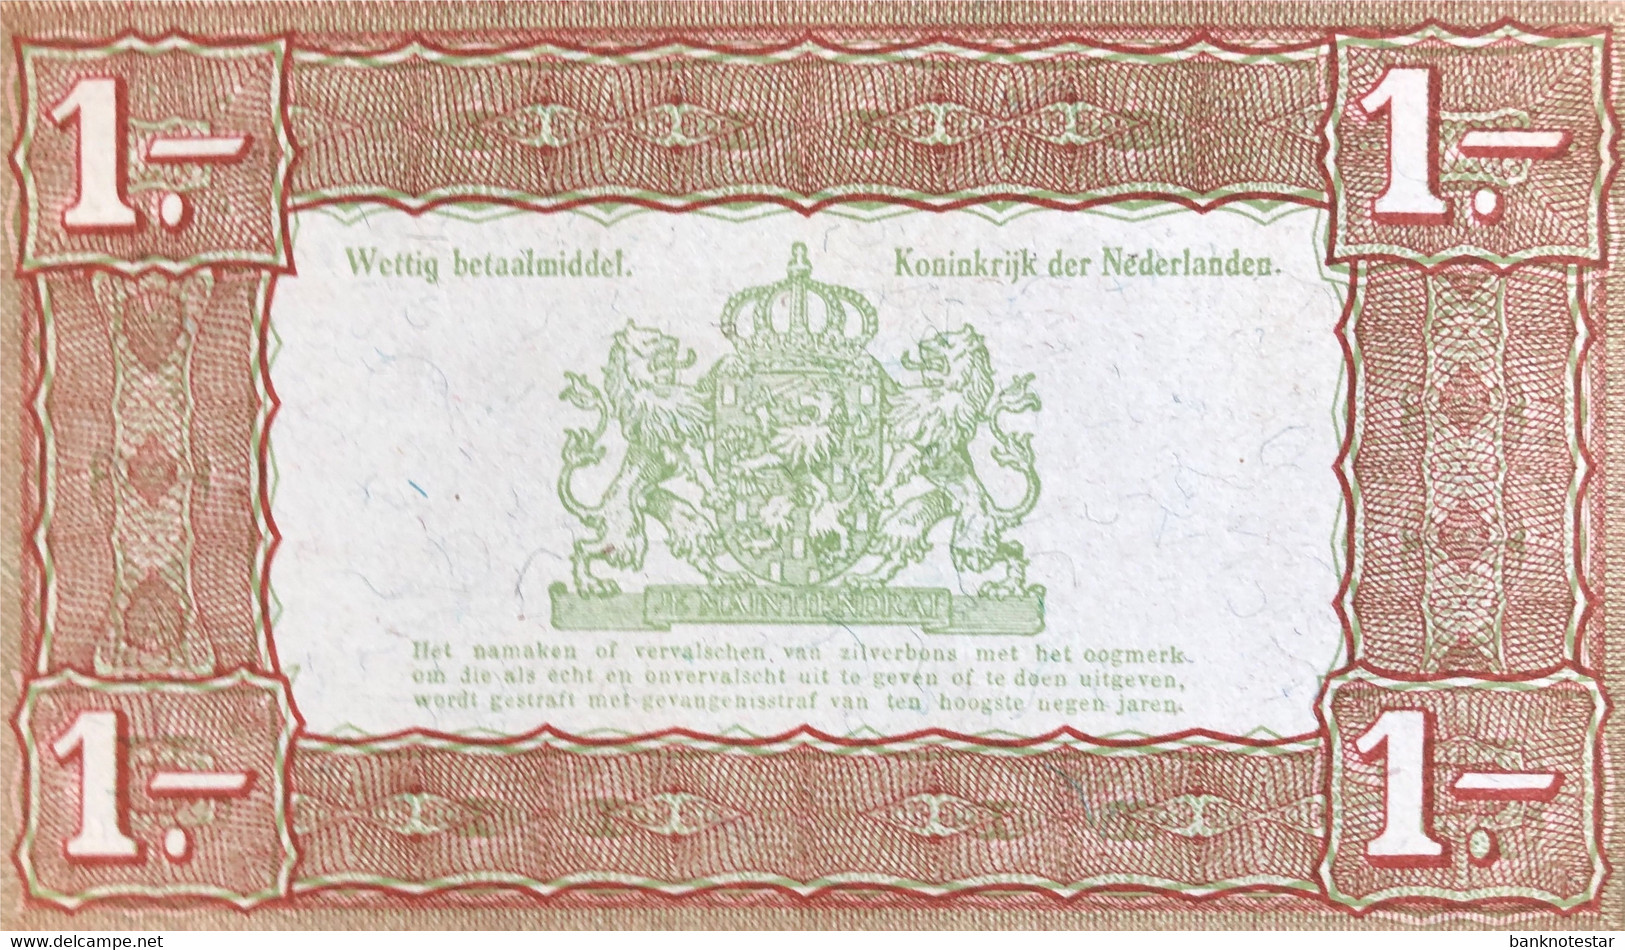 Netherlands 1 Gulden, P-61 (1.10.1938) - UNC - 1 Florín Holandés (gulden)